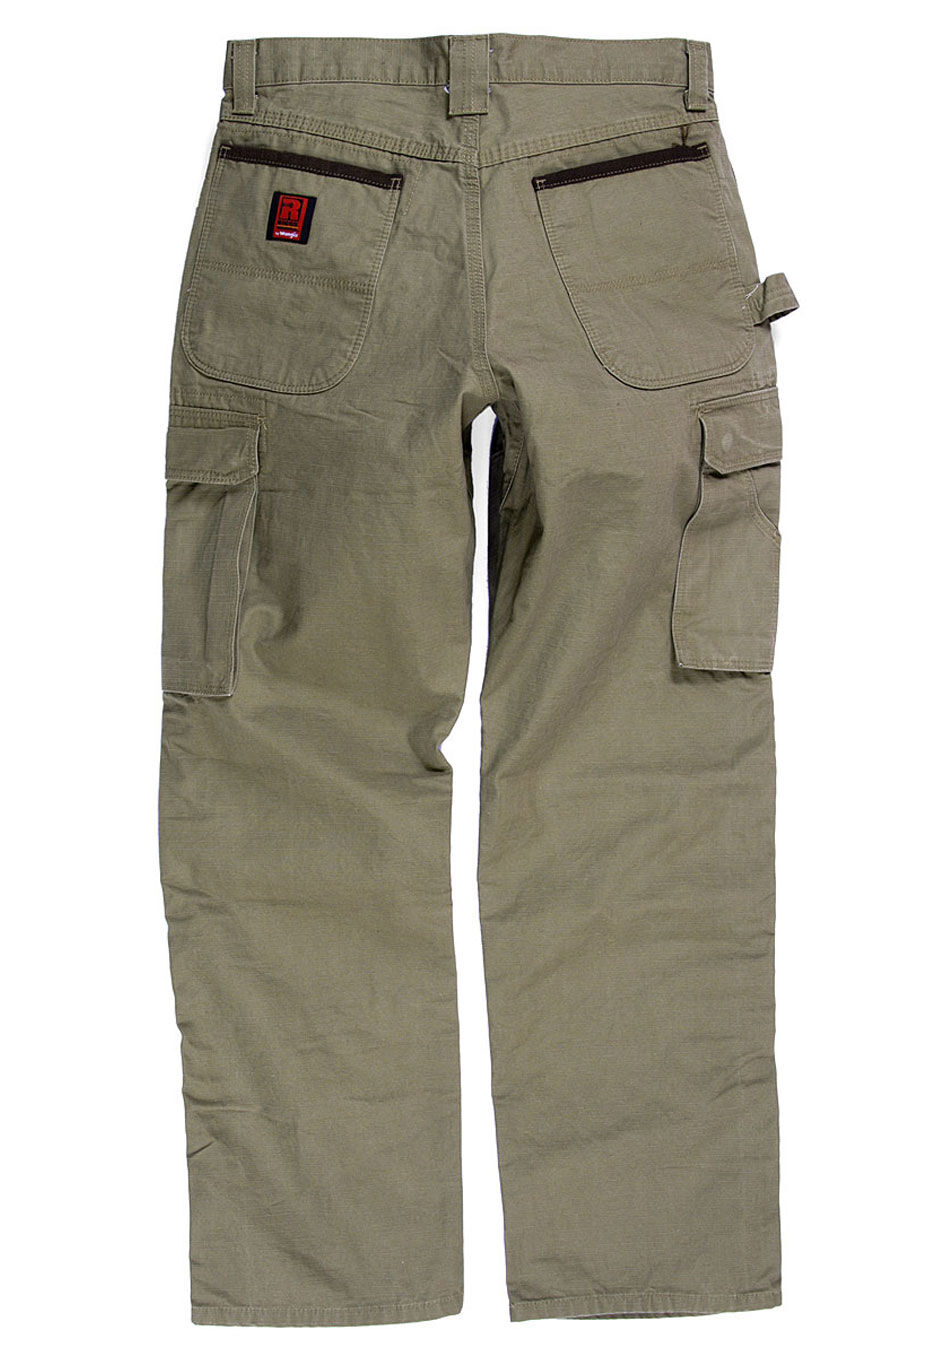 wrangler jeans mens cargo pants